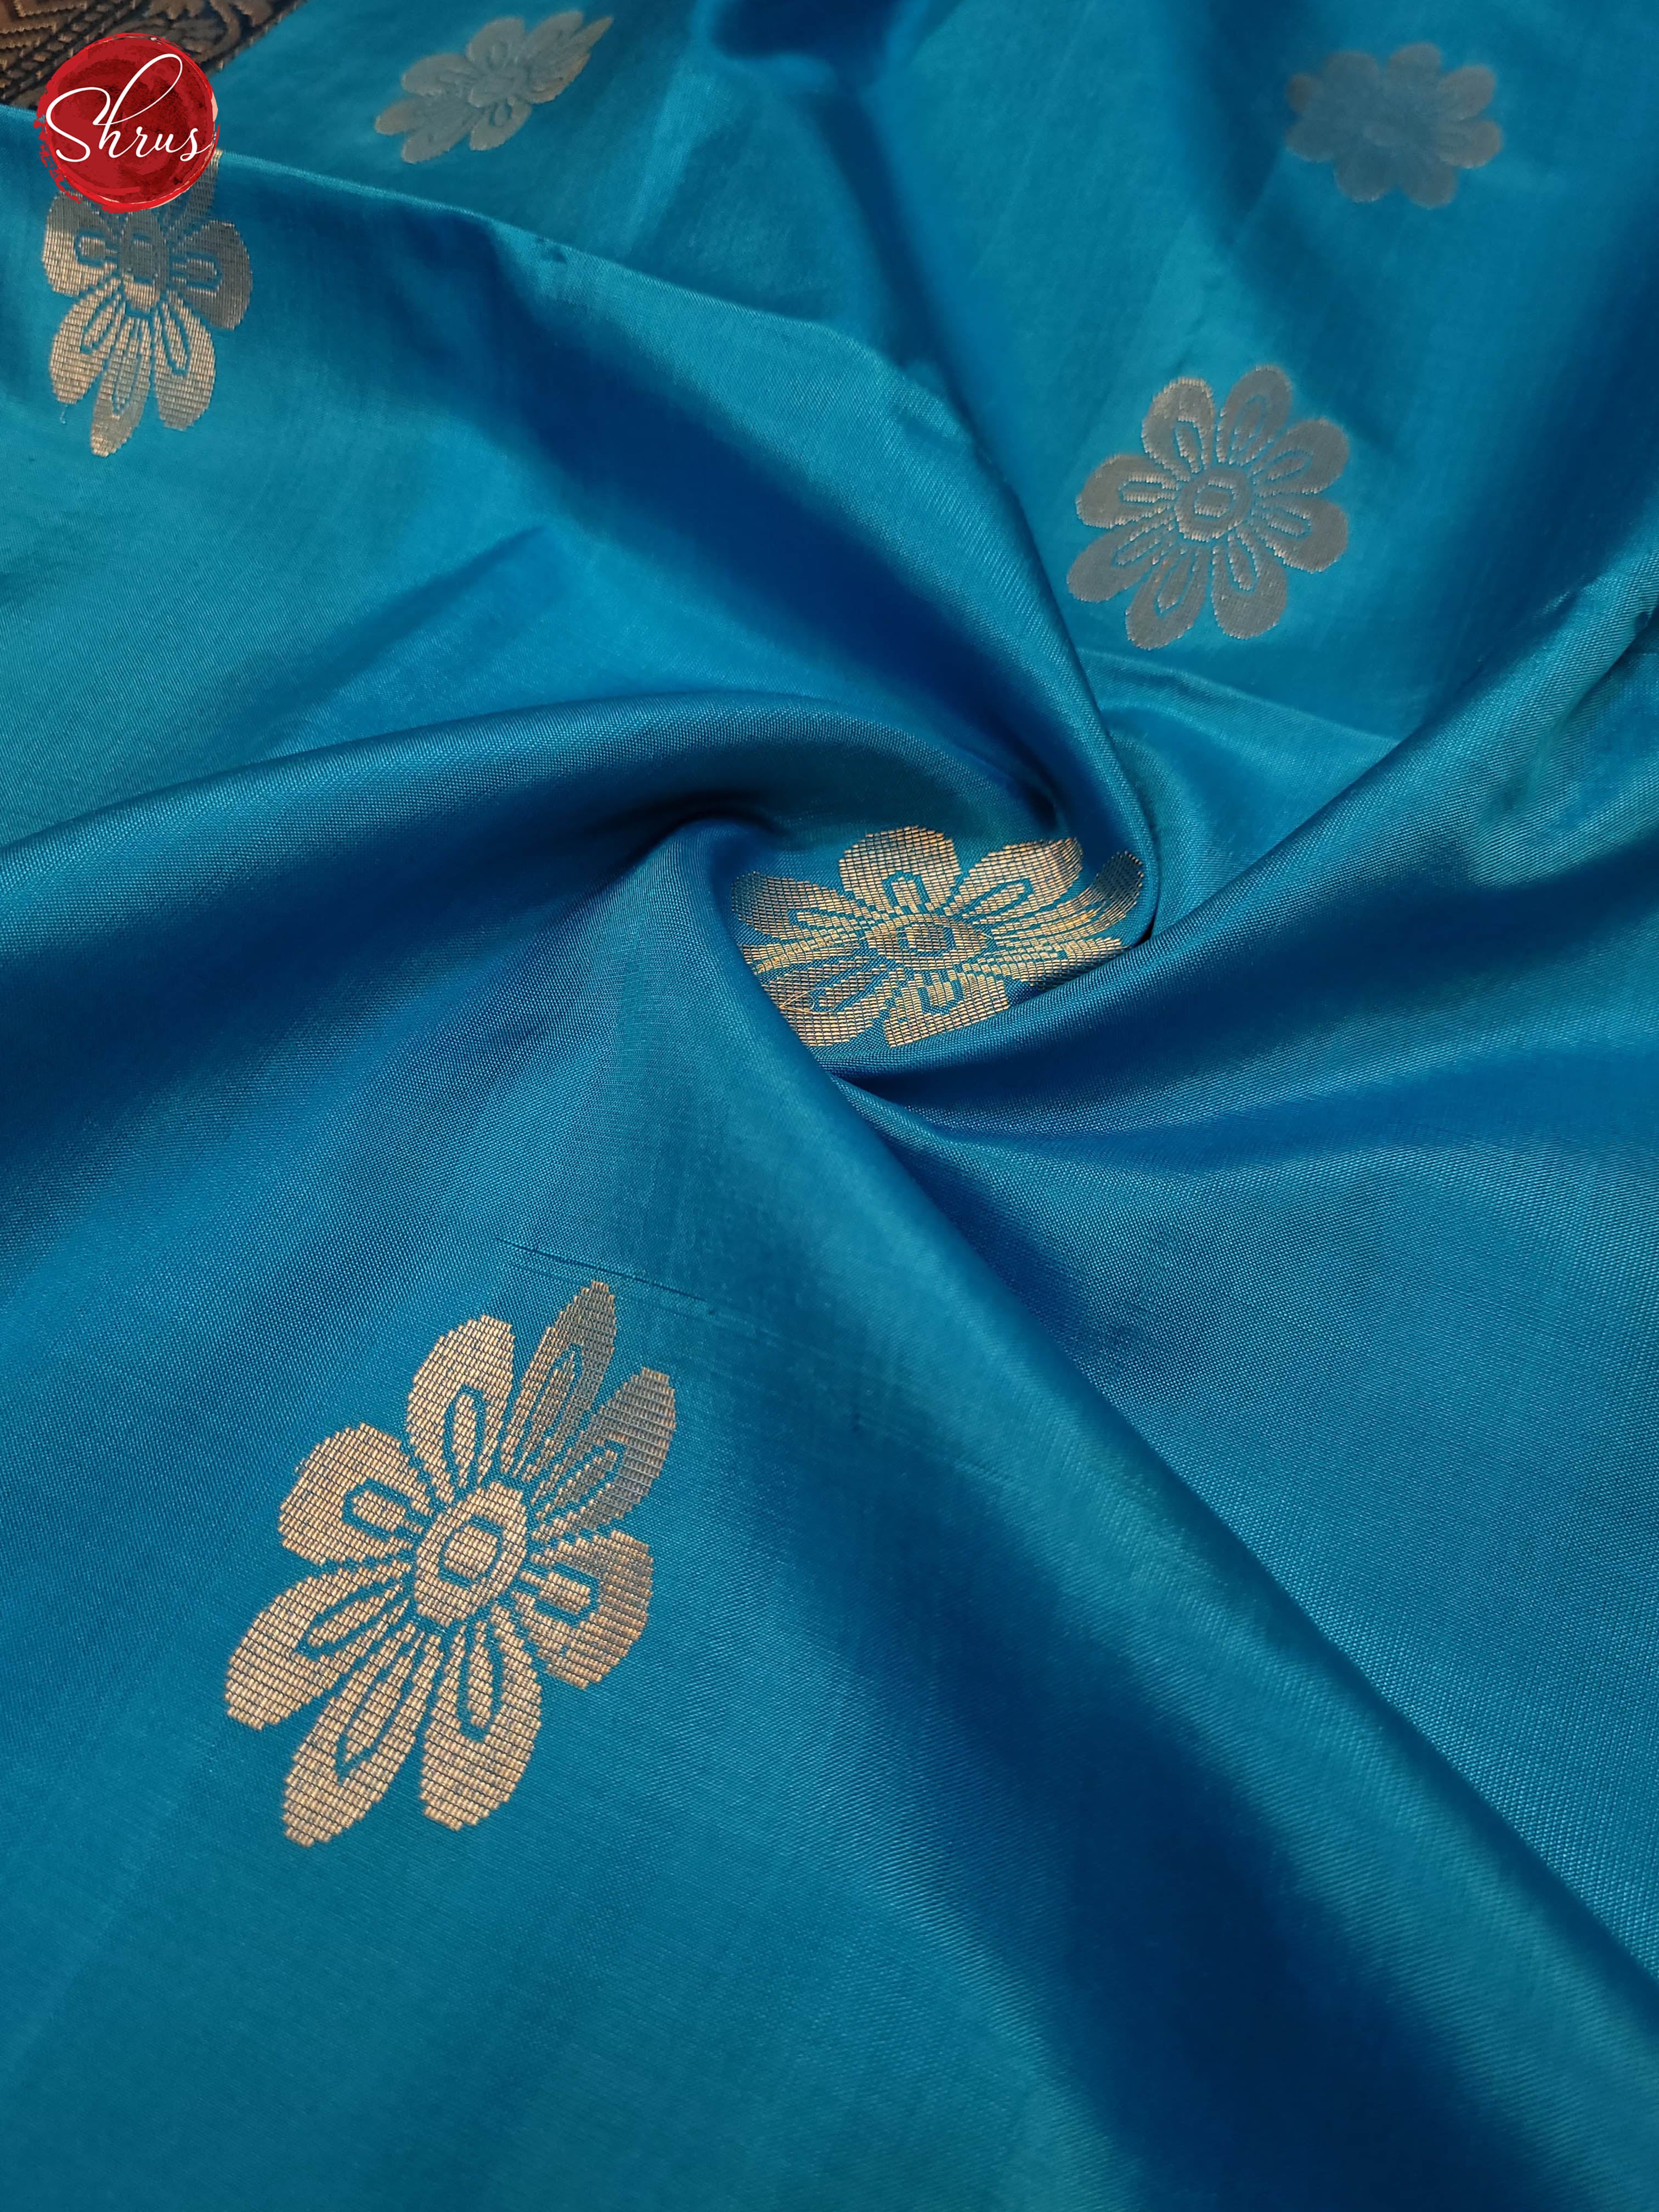 Blue and Grey-Soft silk saree - Shop on ShrusEternity.com